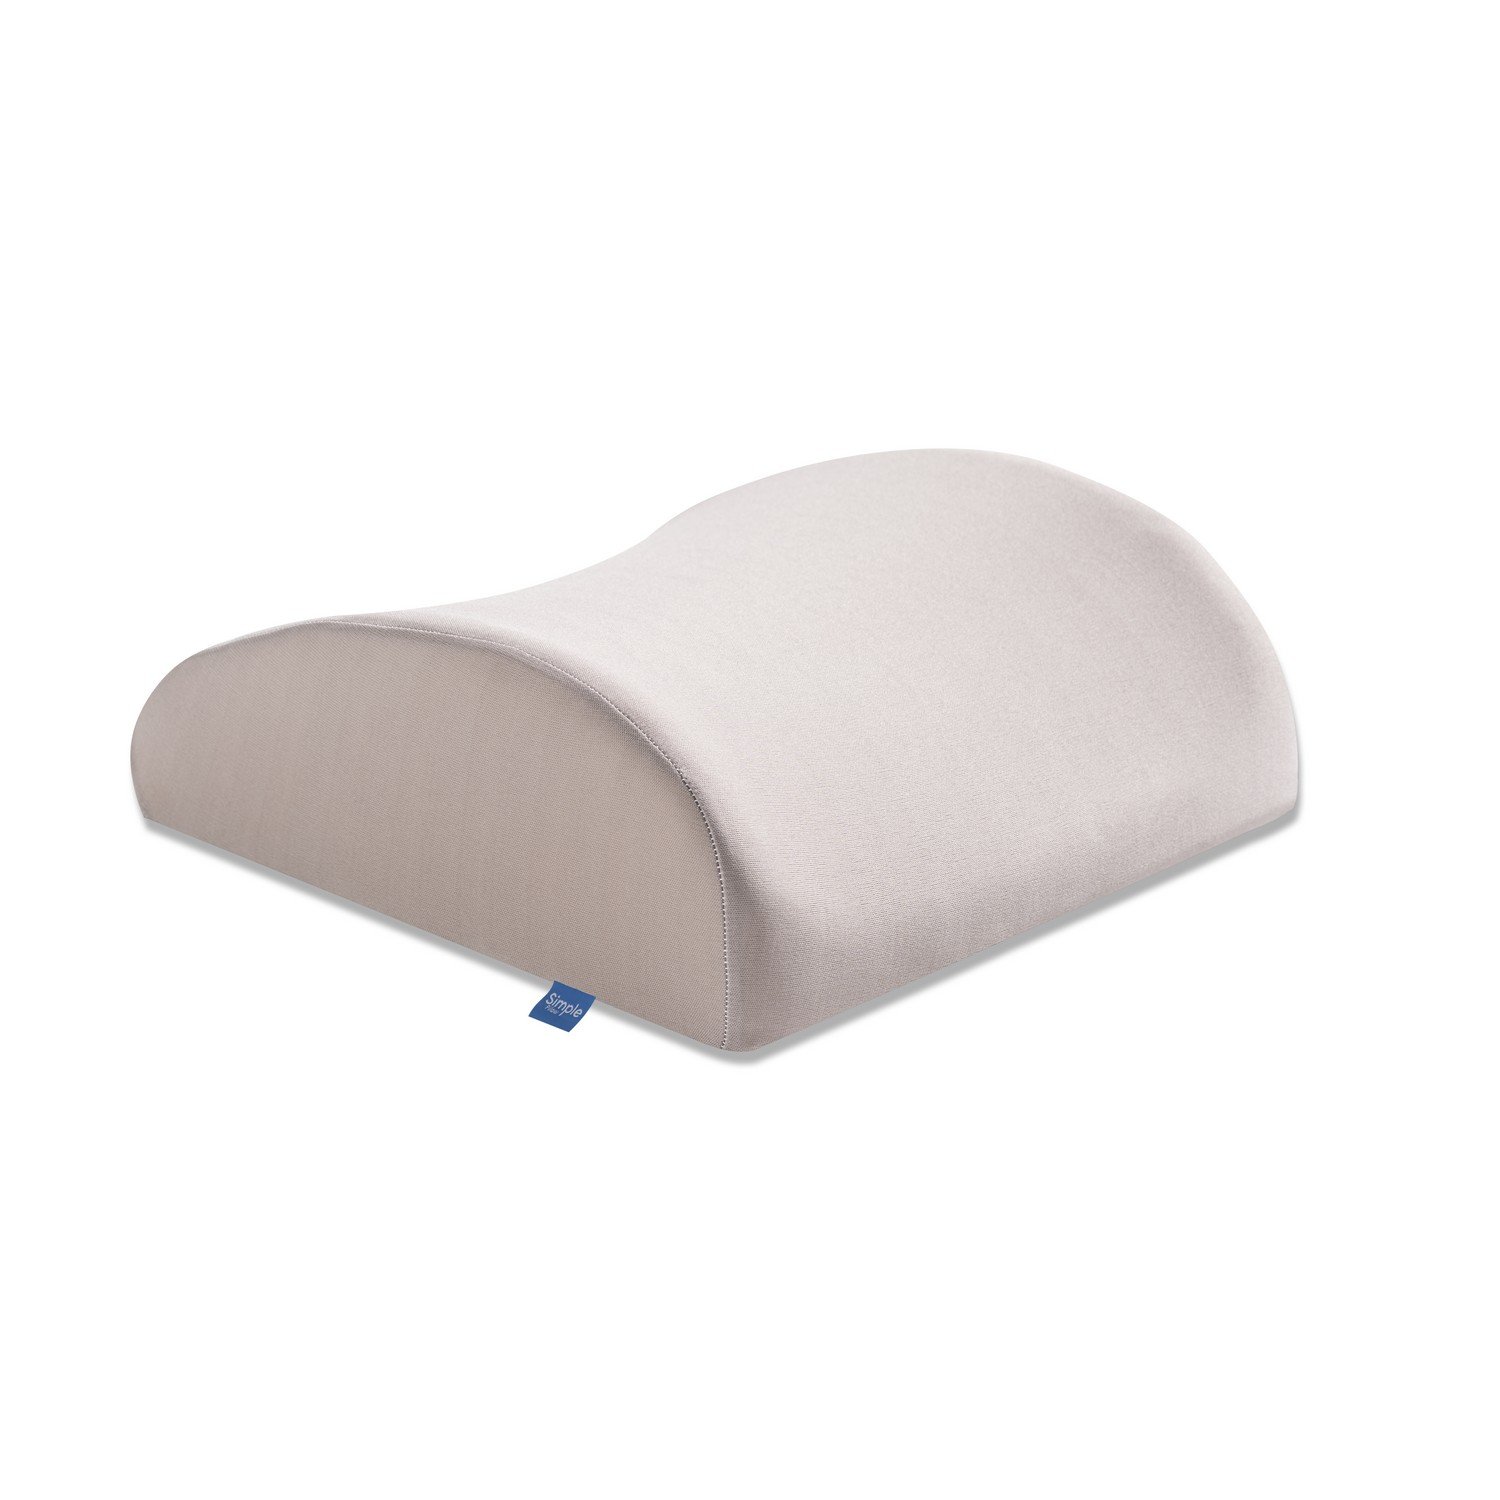 Bel Destek Yastığı Dik Duruş Ortopedik Yastık Omurga Yastığı | Simple The  Pillow